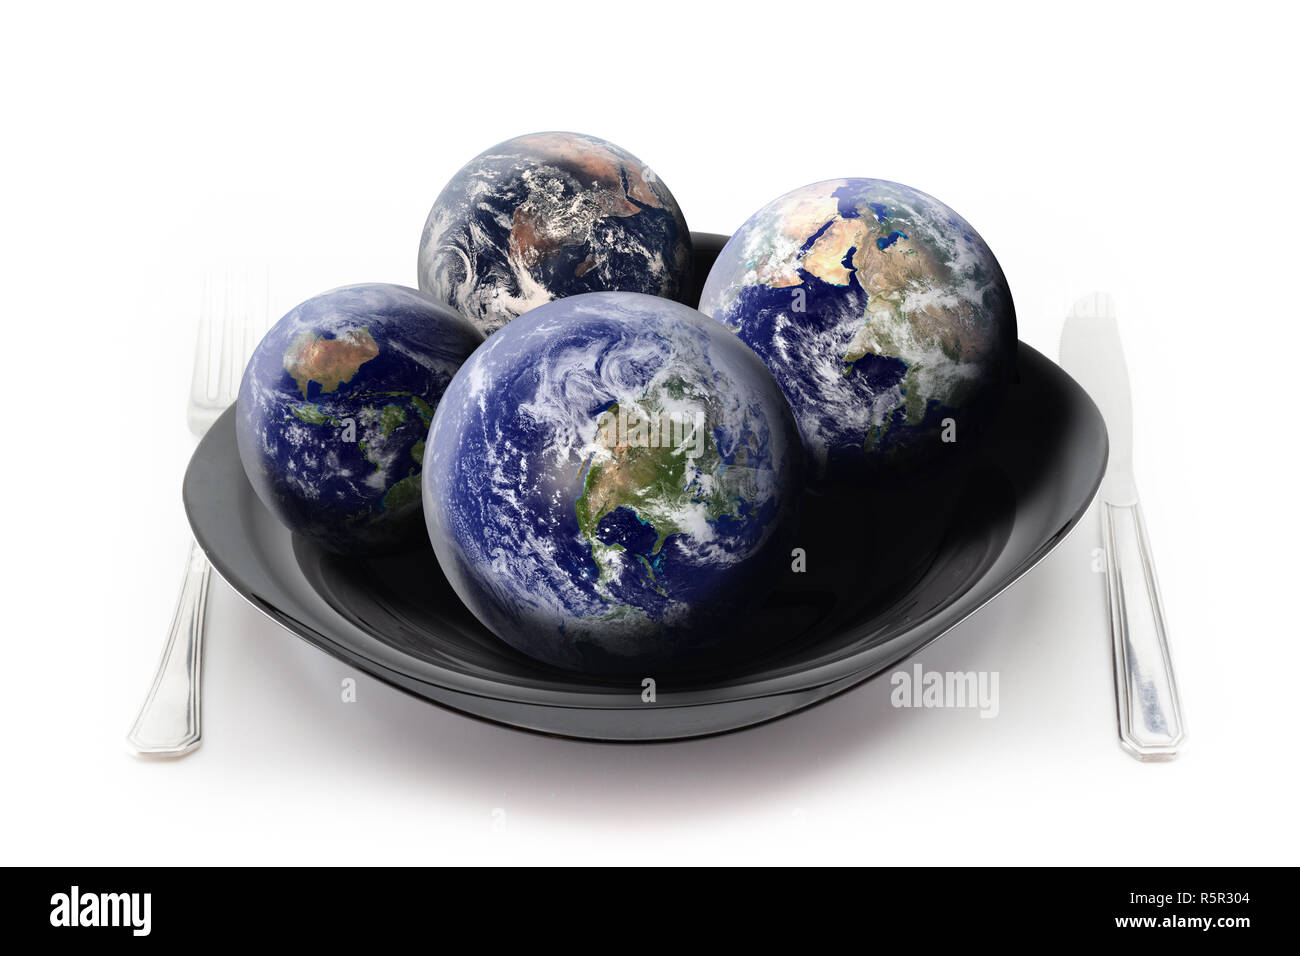 Wie viele Erden brauchen wir unseren Hunger zu befriedigen? Konzept über die Übernutzung von unserem Planeten Erde angezeigte Produkte: 4 Globen an der Platte. Stockfoto